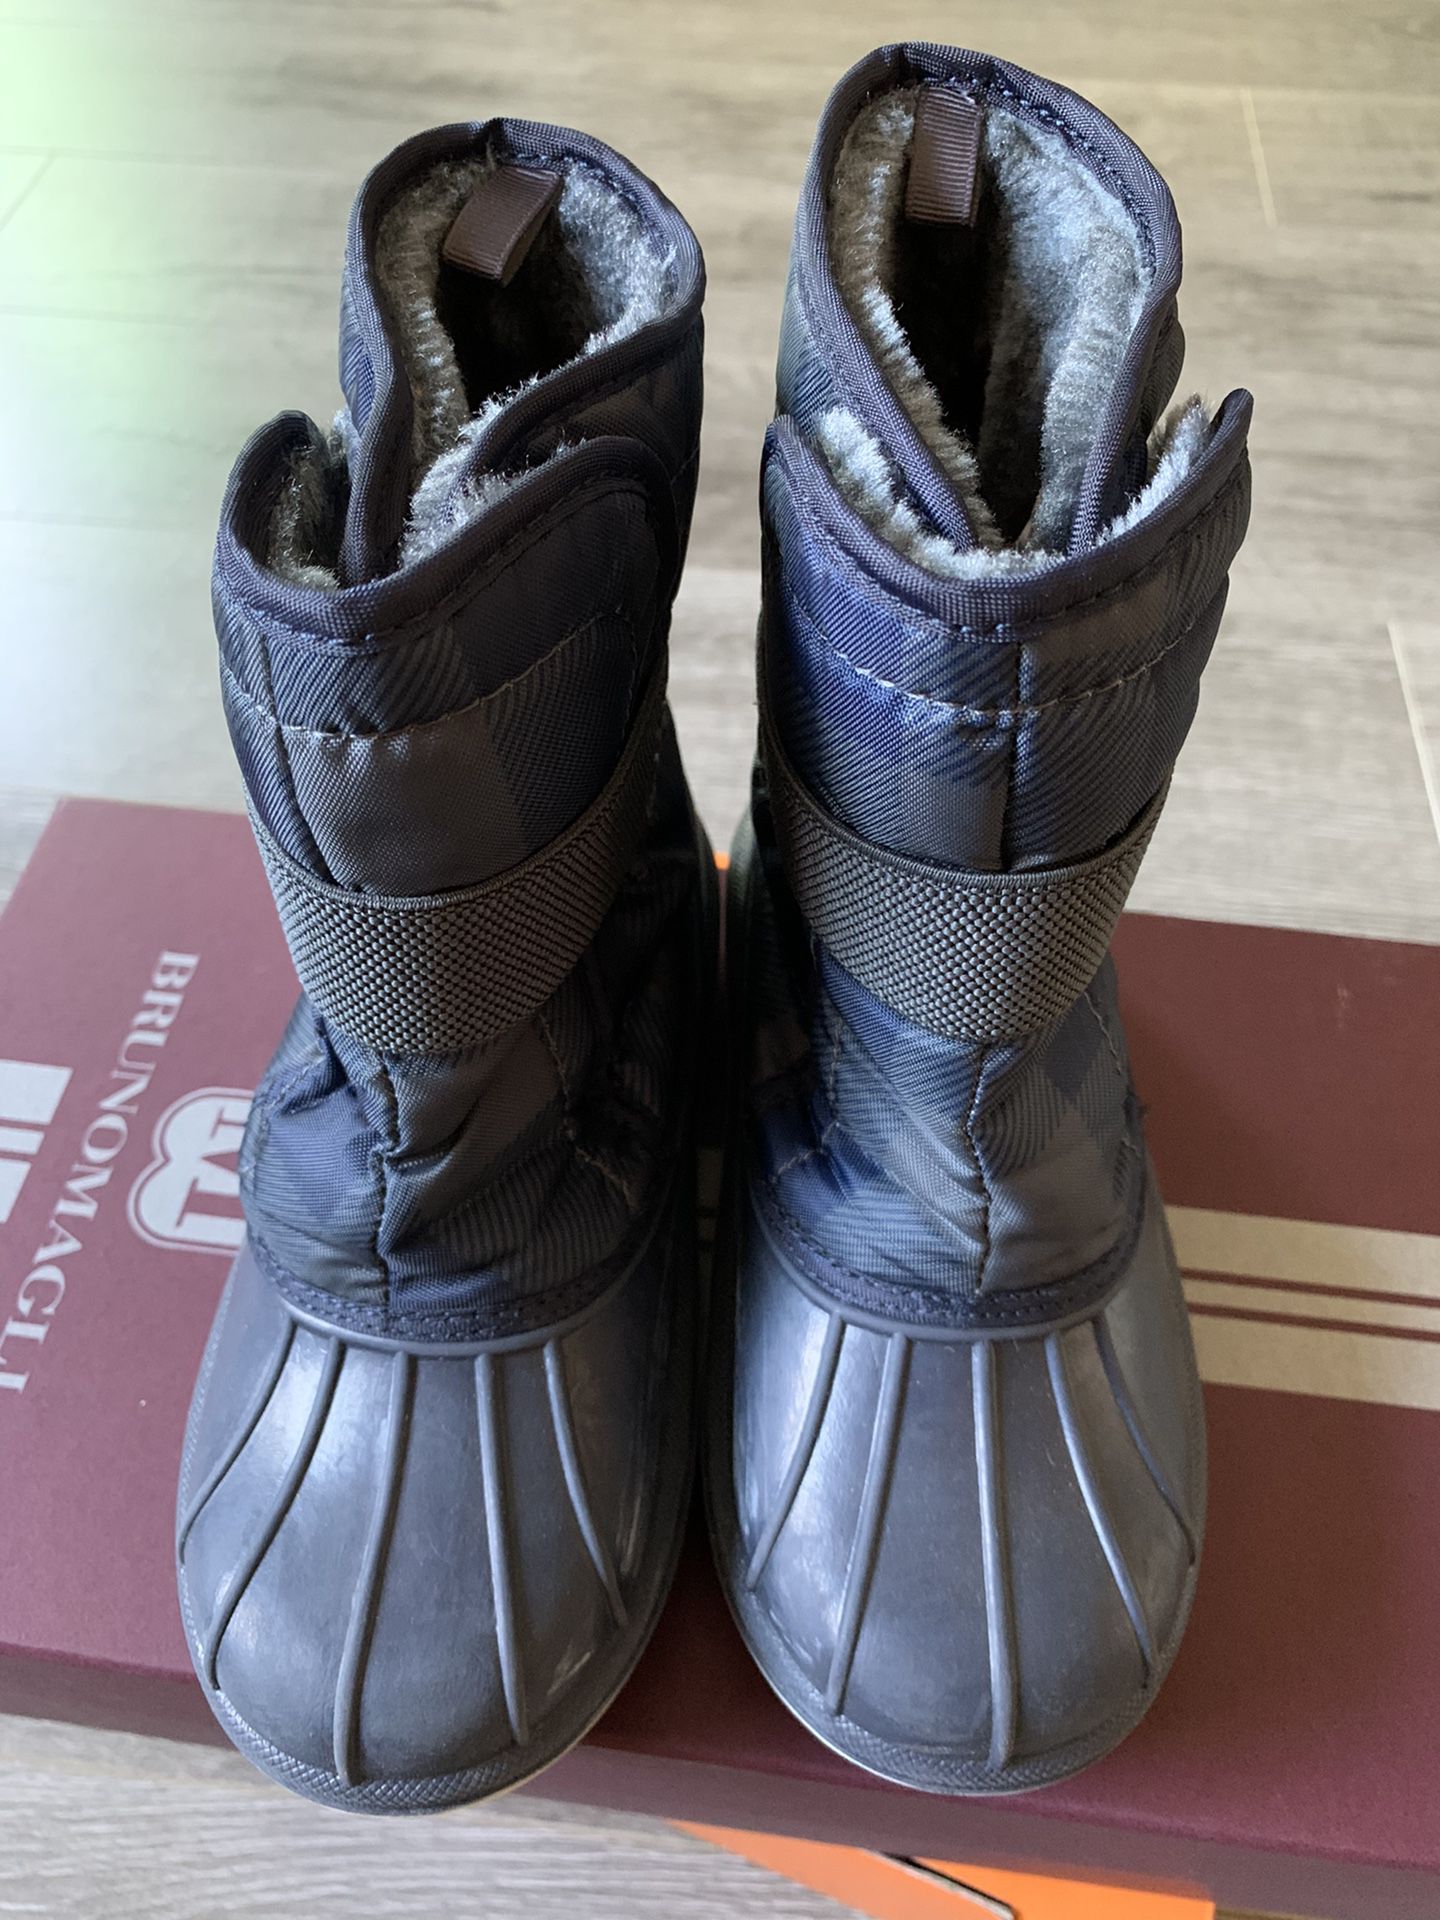 Boy’s snow boots shoes size 12